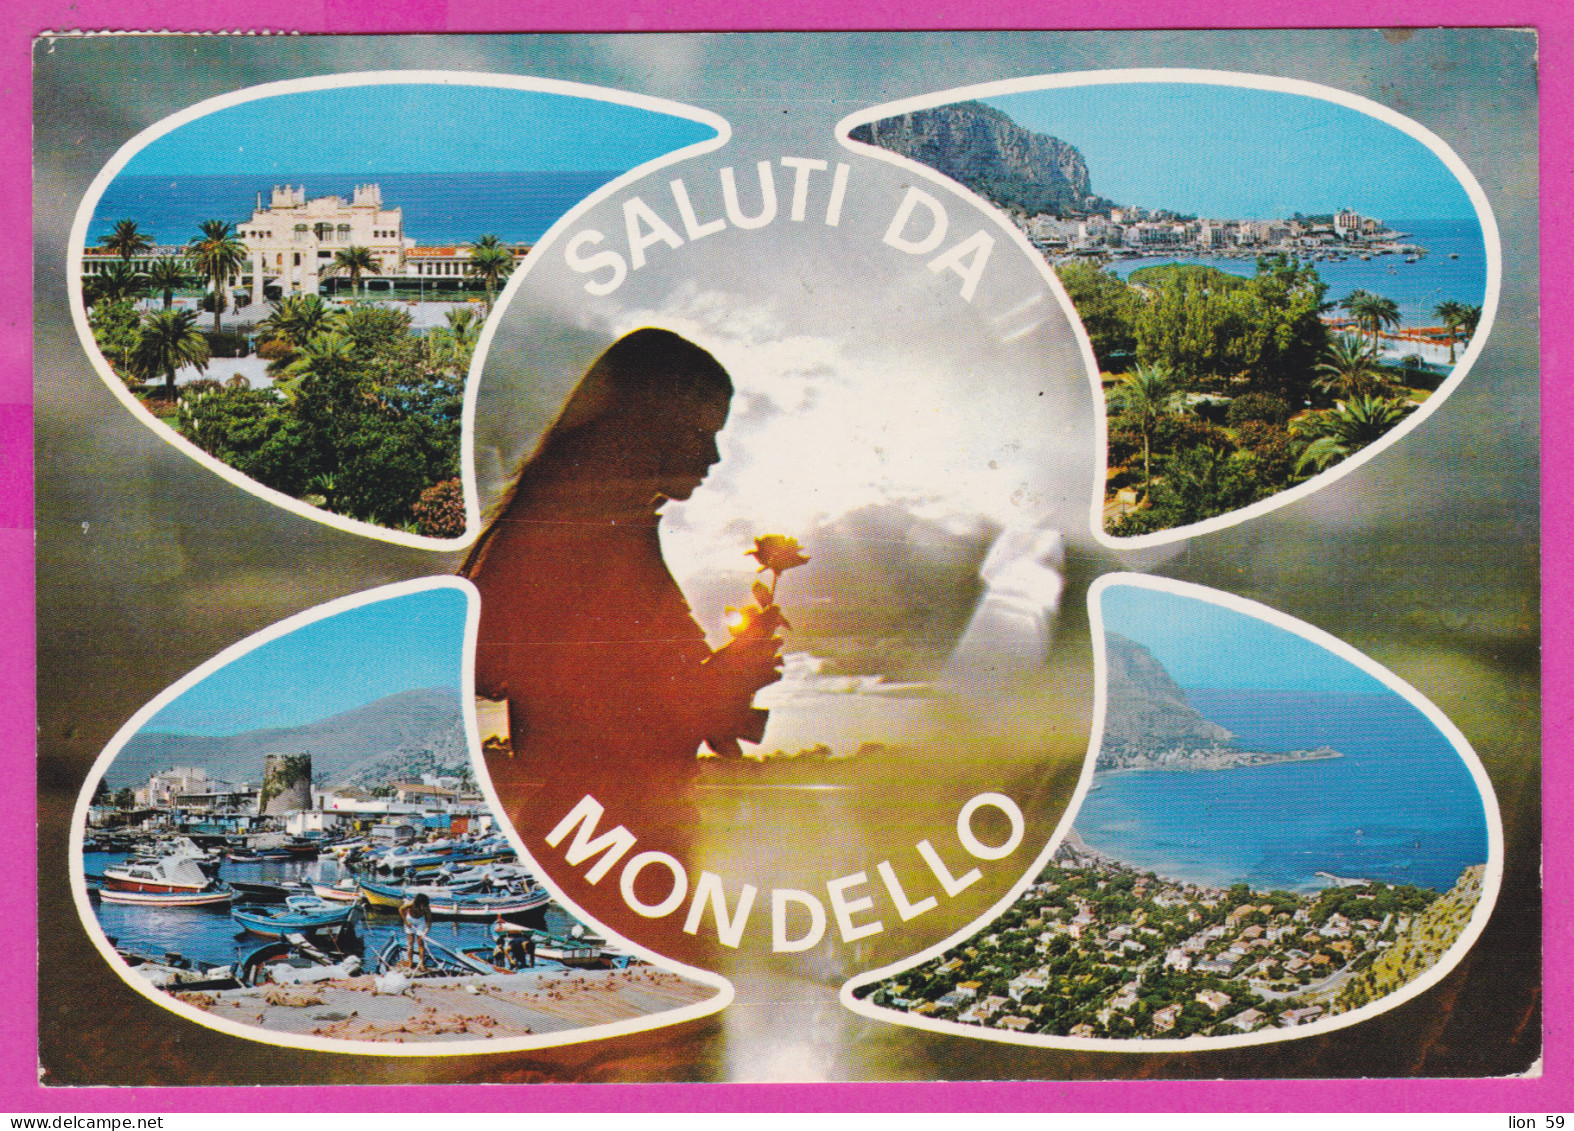 293825 / Italy - Saluti Da Mondello PC 1988 USED 50+100+500 L  Rocca Di Calascio Castello Aragonese - Ischia Rovereto - 1981-90: Marcophilia